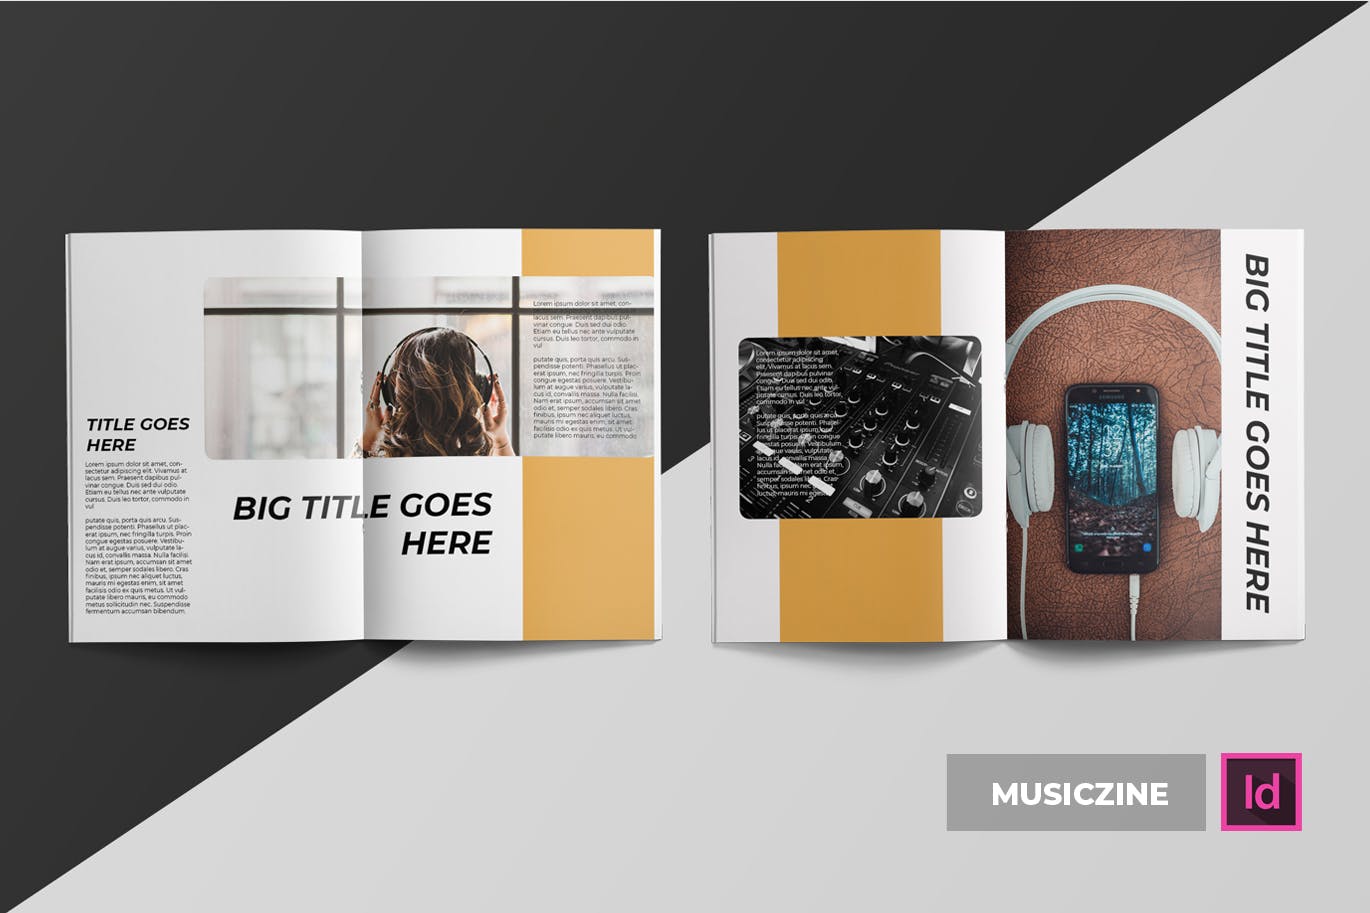 音乐主题专业素材库精选杂志排版设计INDD模板 Musiczine | Magazine Template插图(3)